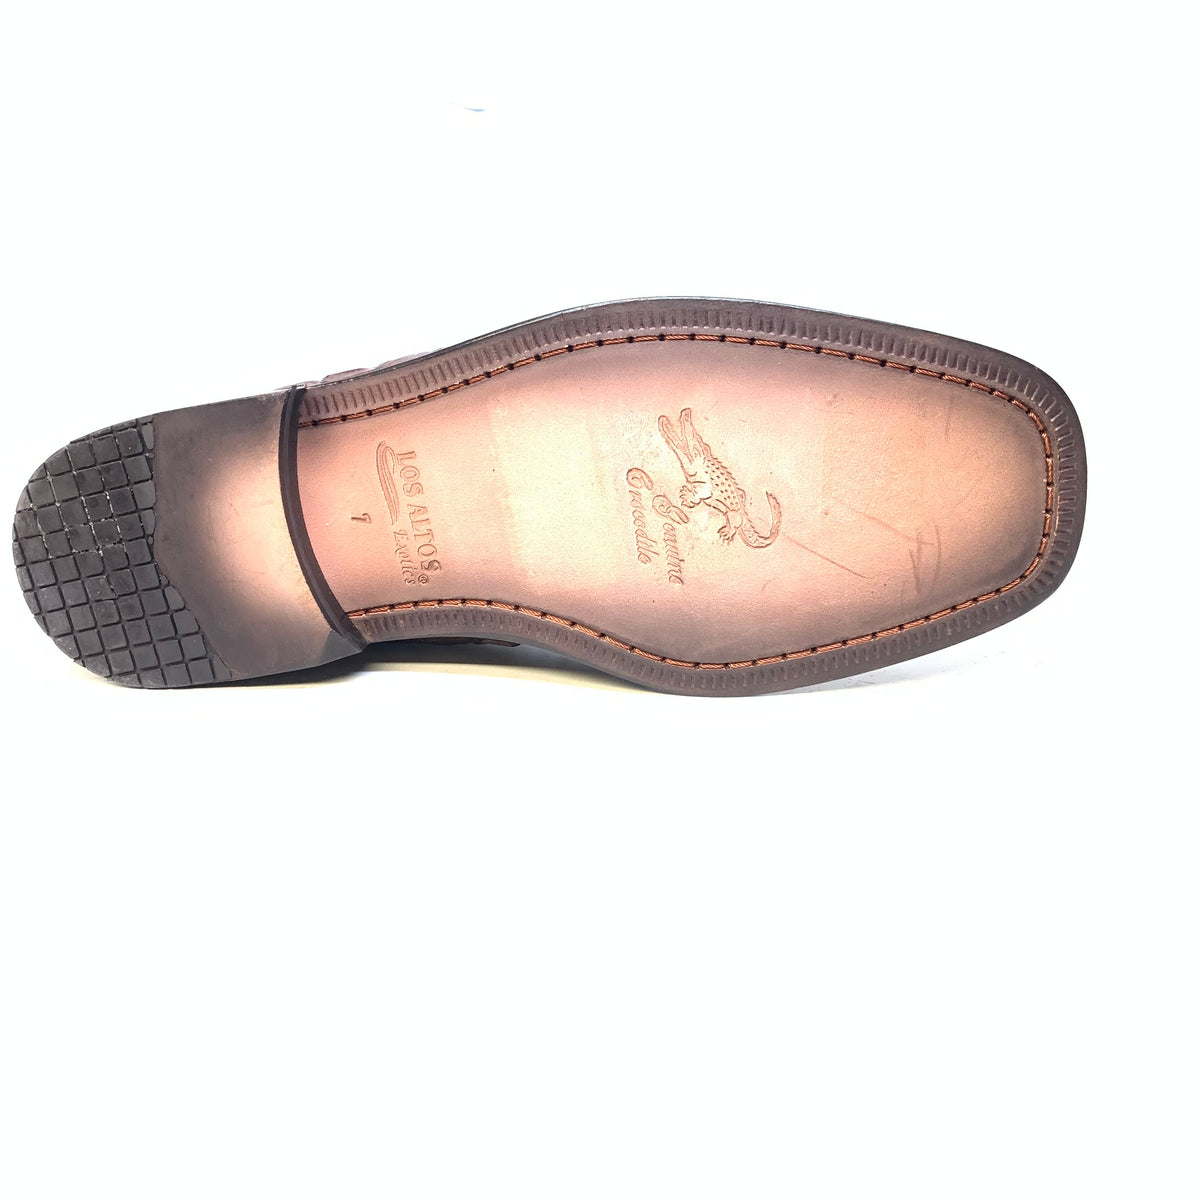 Los Altos Chocolate Brown Crocodile Lace Up Ankle Boots - Dudes Boutique